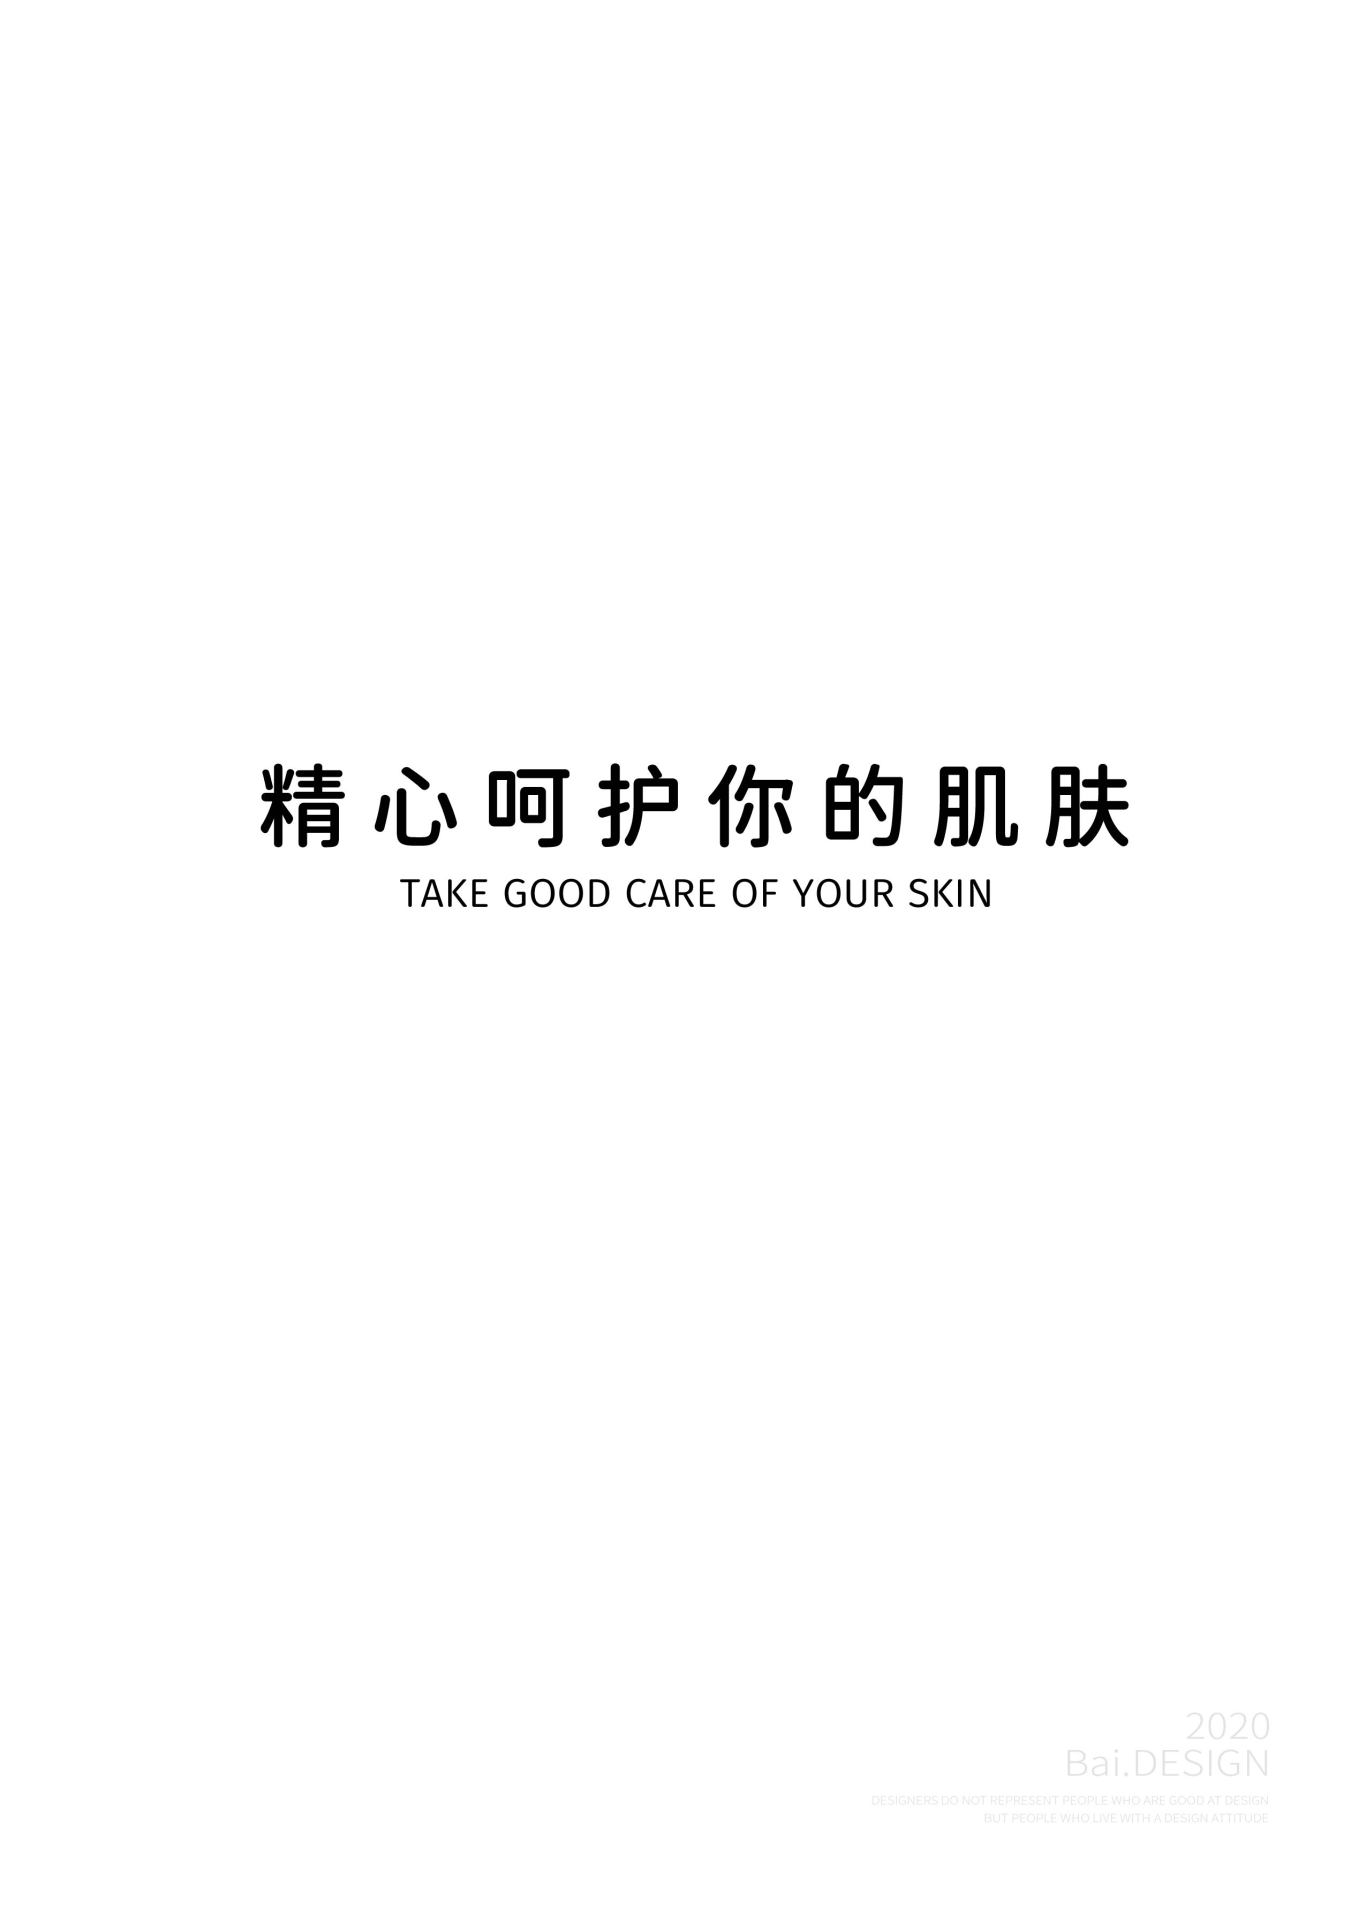 肌肤养护品牌酝颜堂logo设计图1